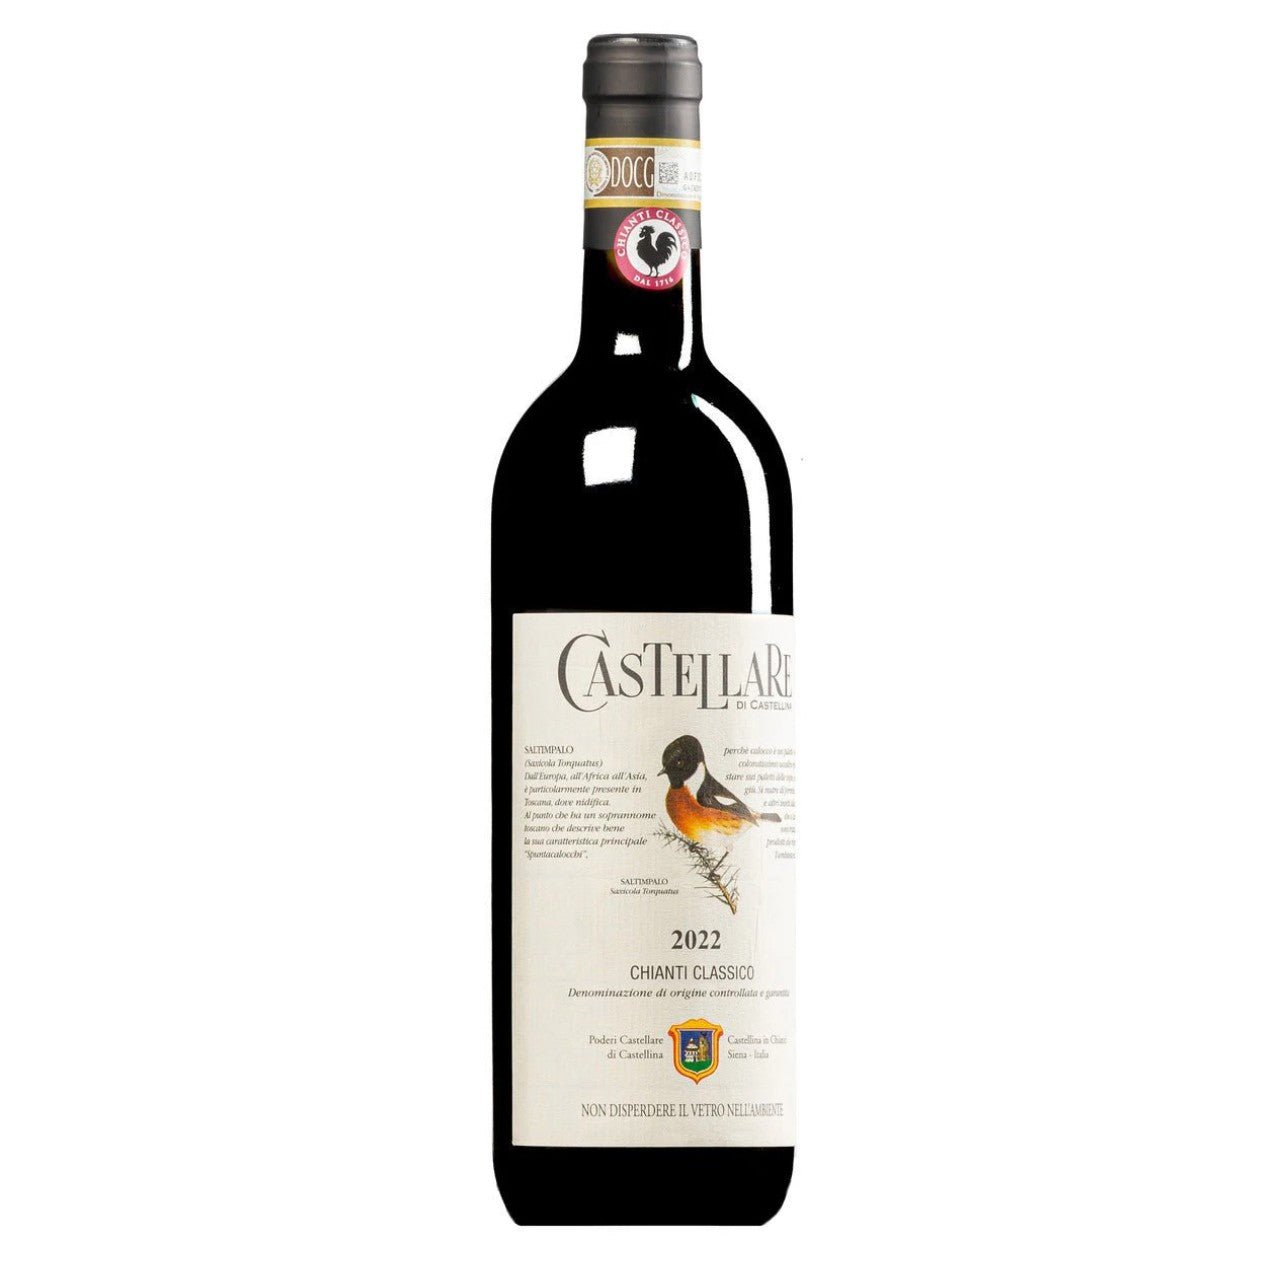 Castellare Red Wine Chianti Classico 2022 - Wine Italy Red - Liquor Wine Cave